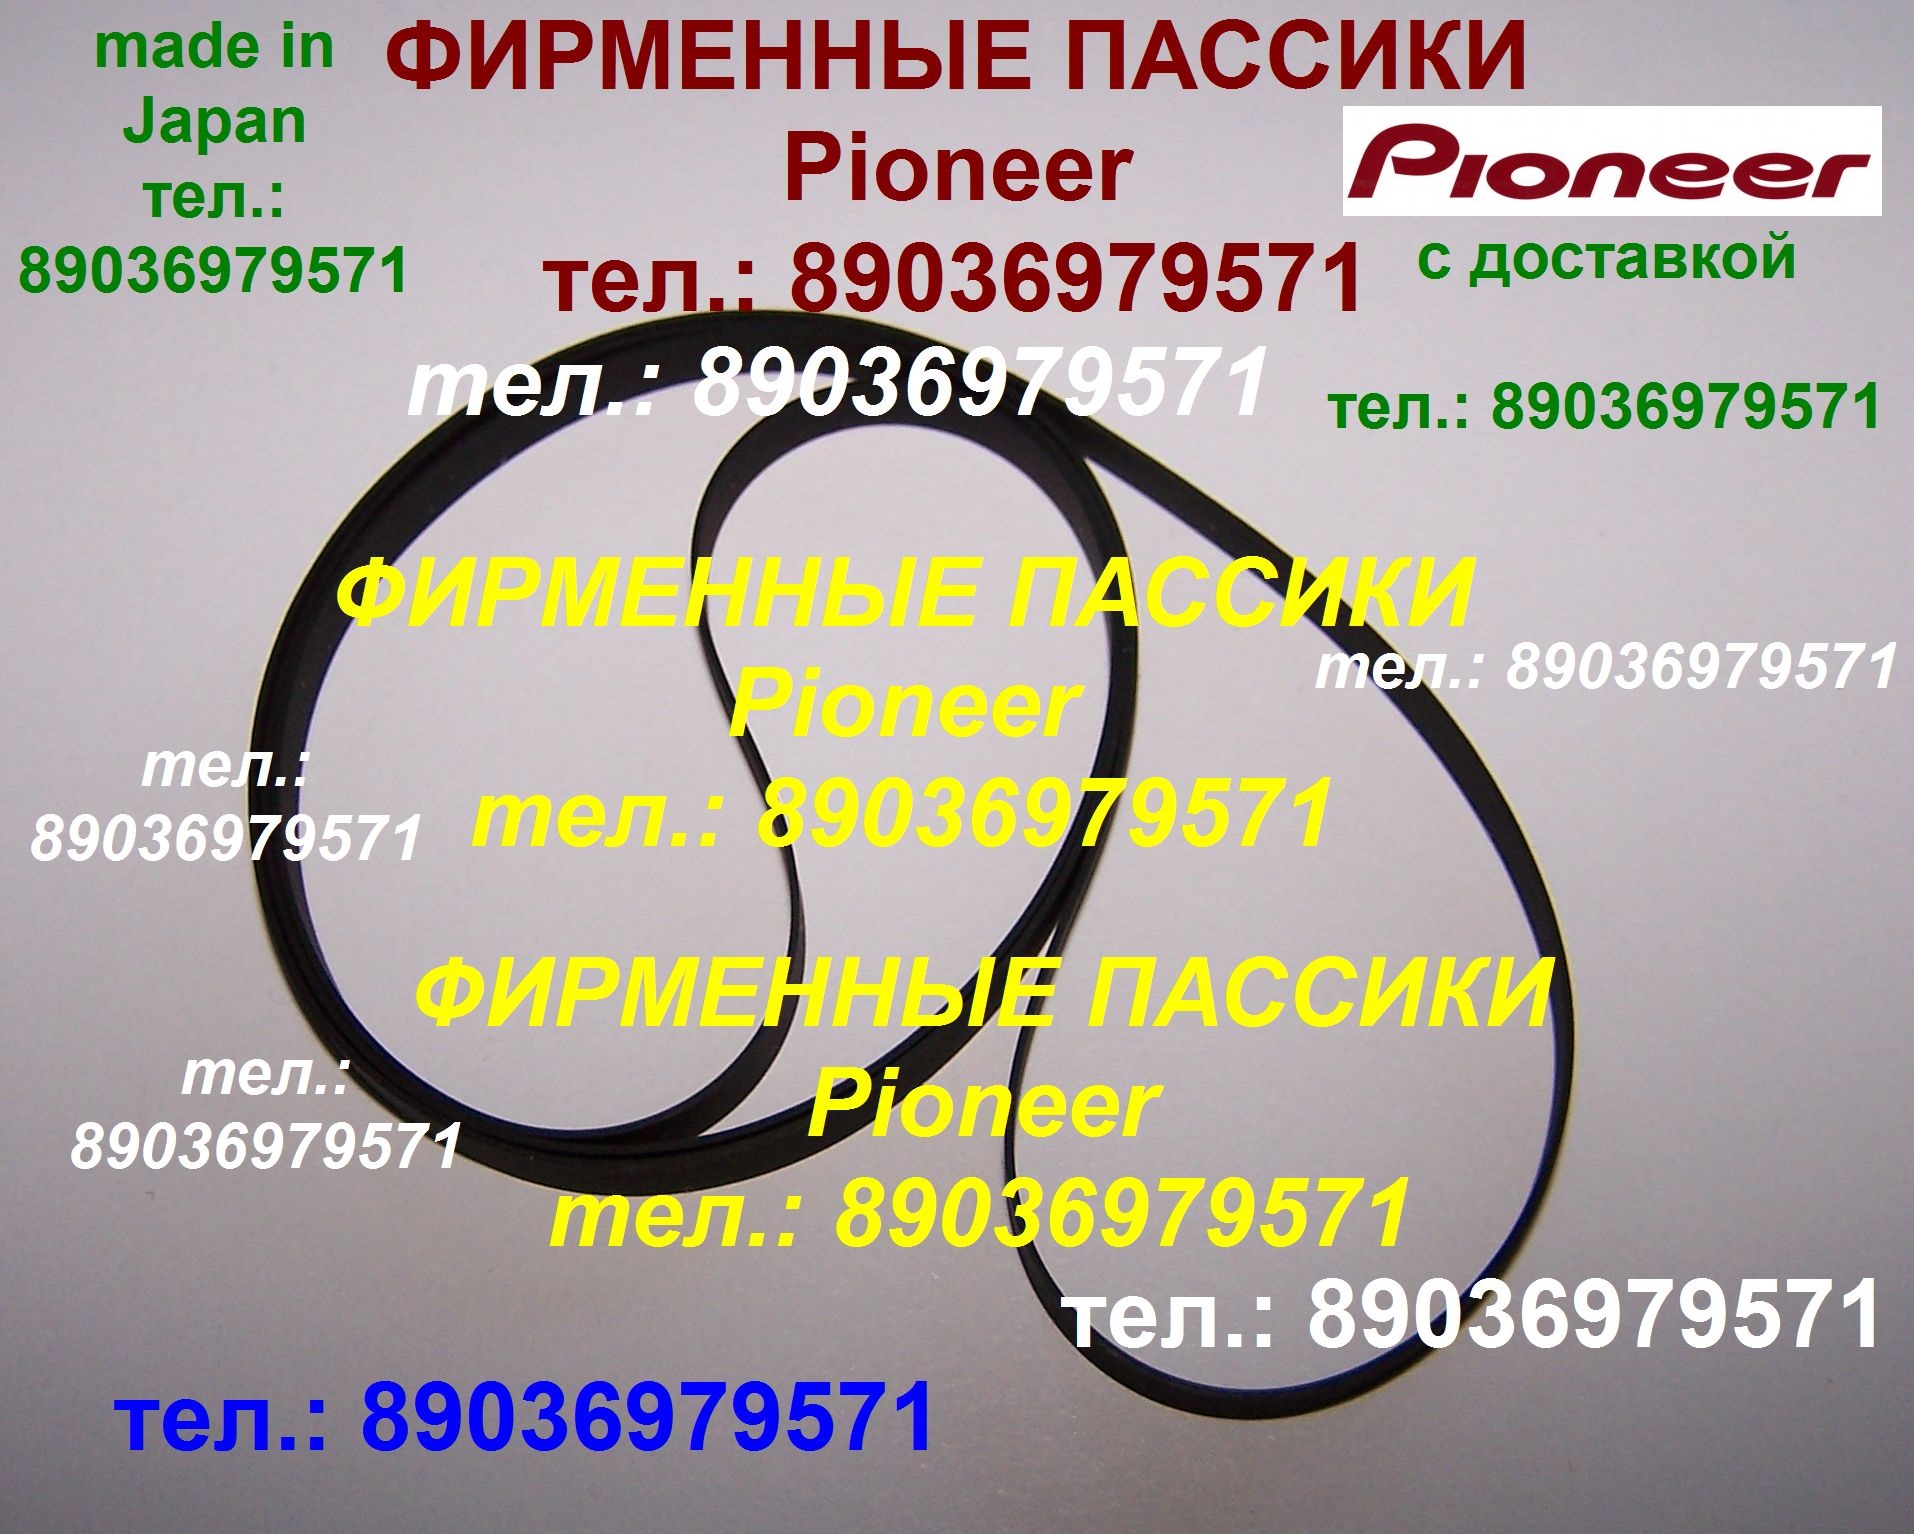 Пассики Pioneer PL-J230 PL-J500 PL-335 PLZ91 PL-J210 PLZ81 PLZ82 PLZ91 PL225 PLZ92 PLZ93 PLZ94 Пассики Pioneer PL-J230 PL-J500 PL-335 PLZ91 PL-J210 PLZ81 PLZ82 PLZ91 PL225 PLZ92 PLZ93 PLZ94 в городе Москва, фото 1, Московская область